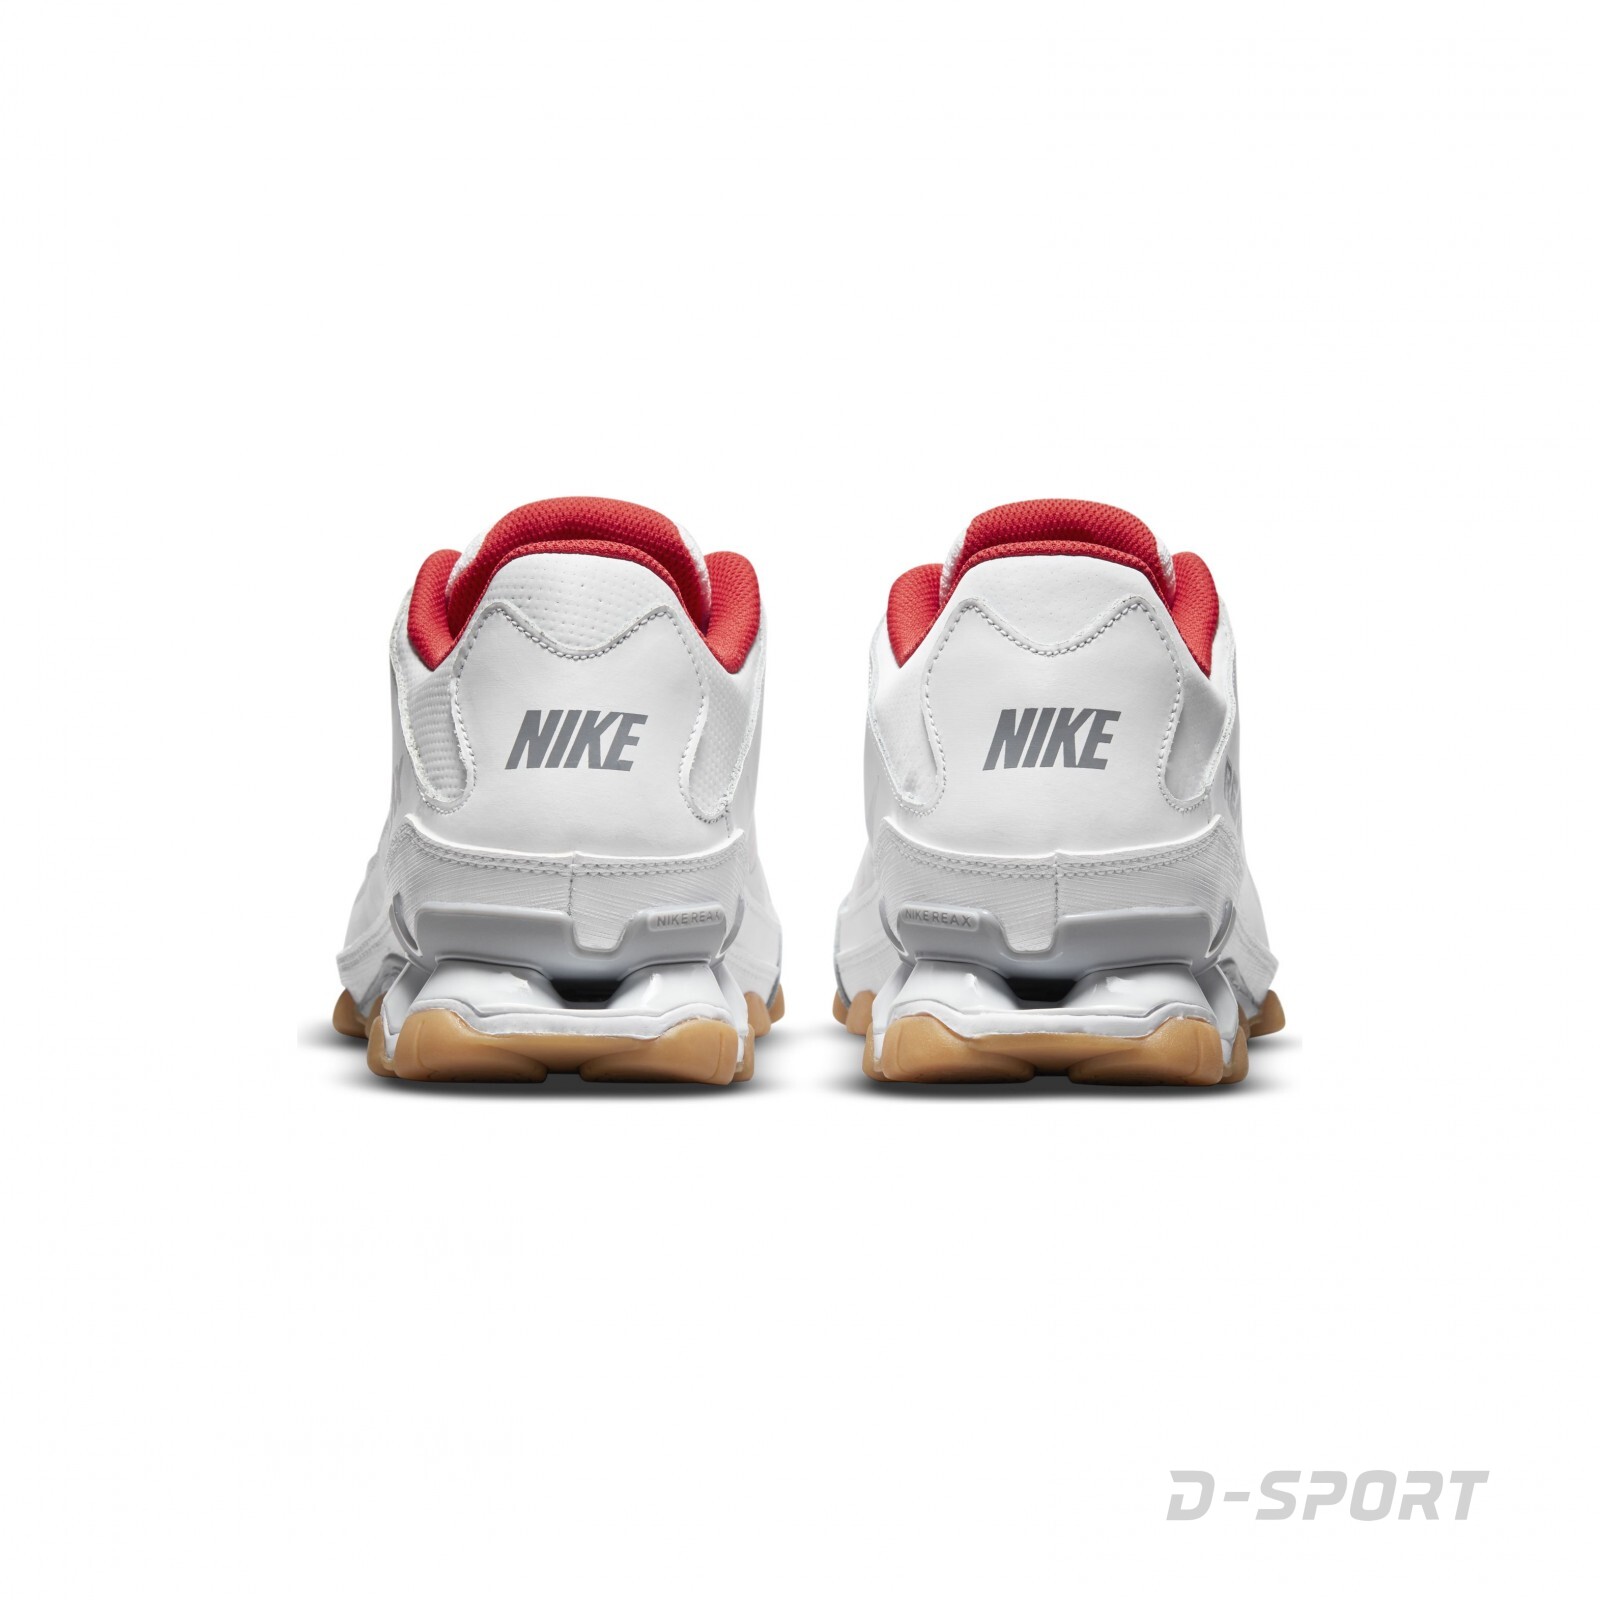 Nike Reax 8 TR